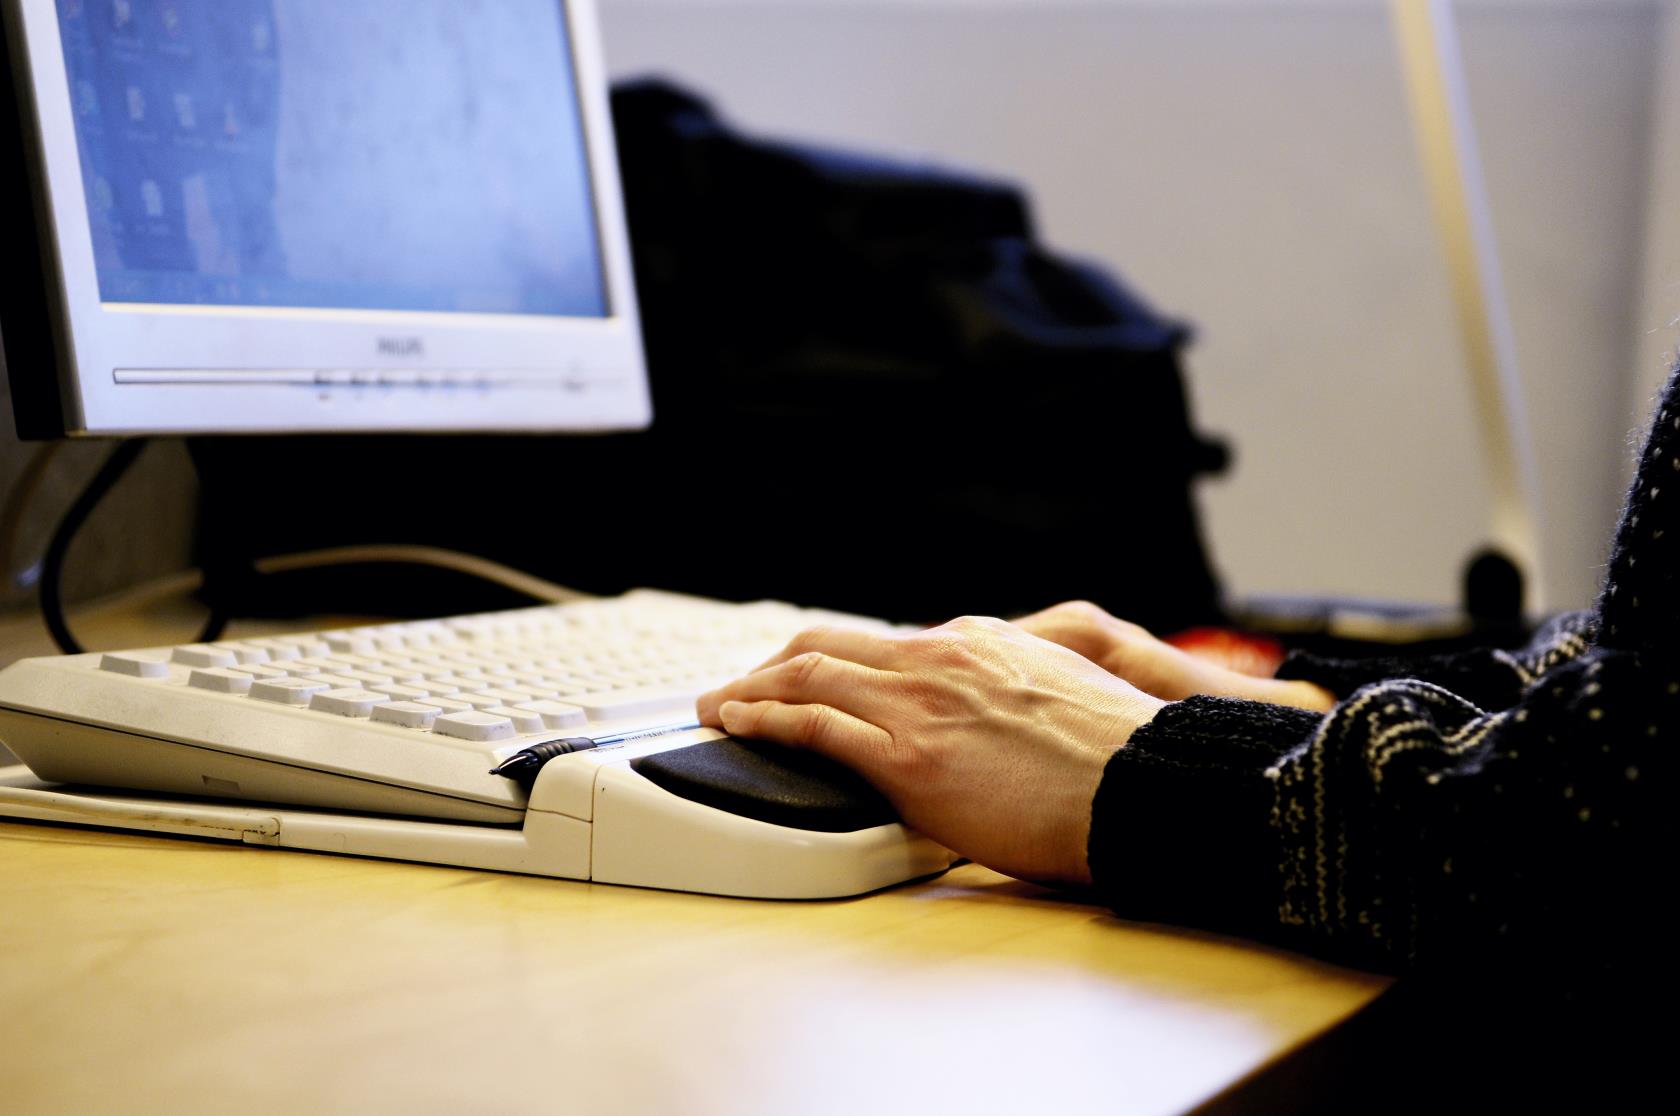 Närbild på händer som skriver på ett tangentbord. En bit av en skärm syns också.